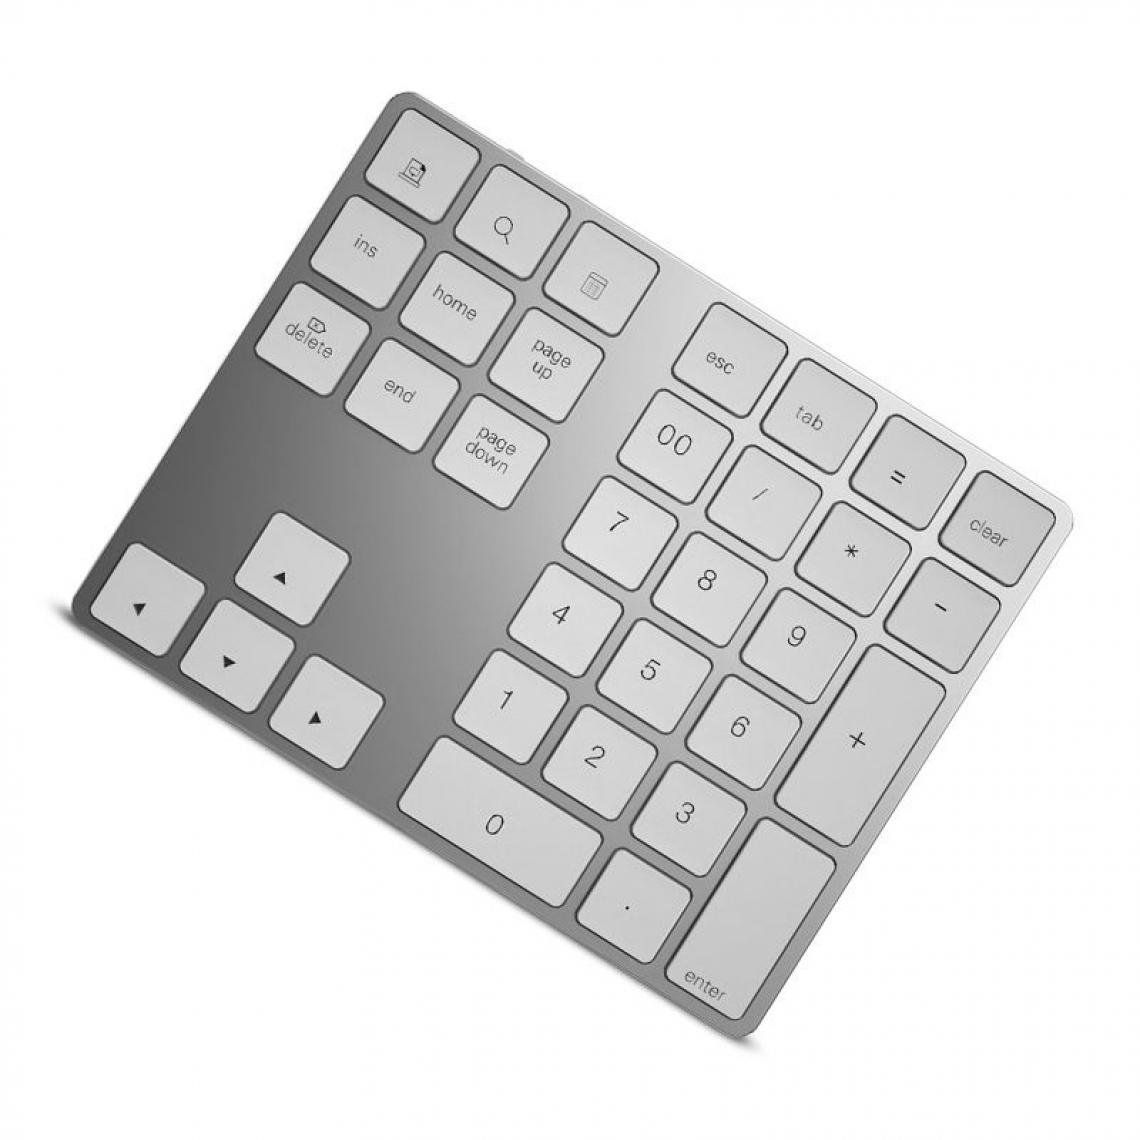 Generic - Clavier numérique sans fil Bluetooth 3.0, 34 touches  pour comptabilité, compatible  avec Mac Windows IOS, PC OS Android, tablette et ordinateur portables 14.6 * 11.4 * 0.9 cm - Blanc  - Clavier